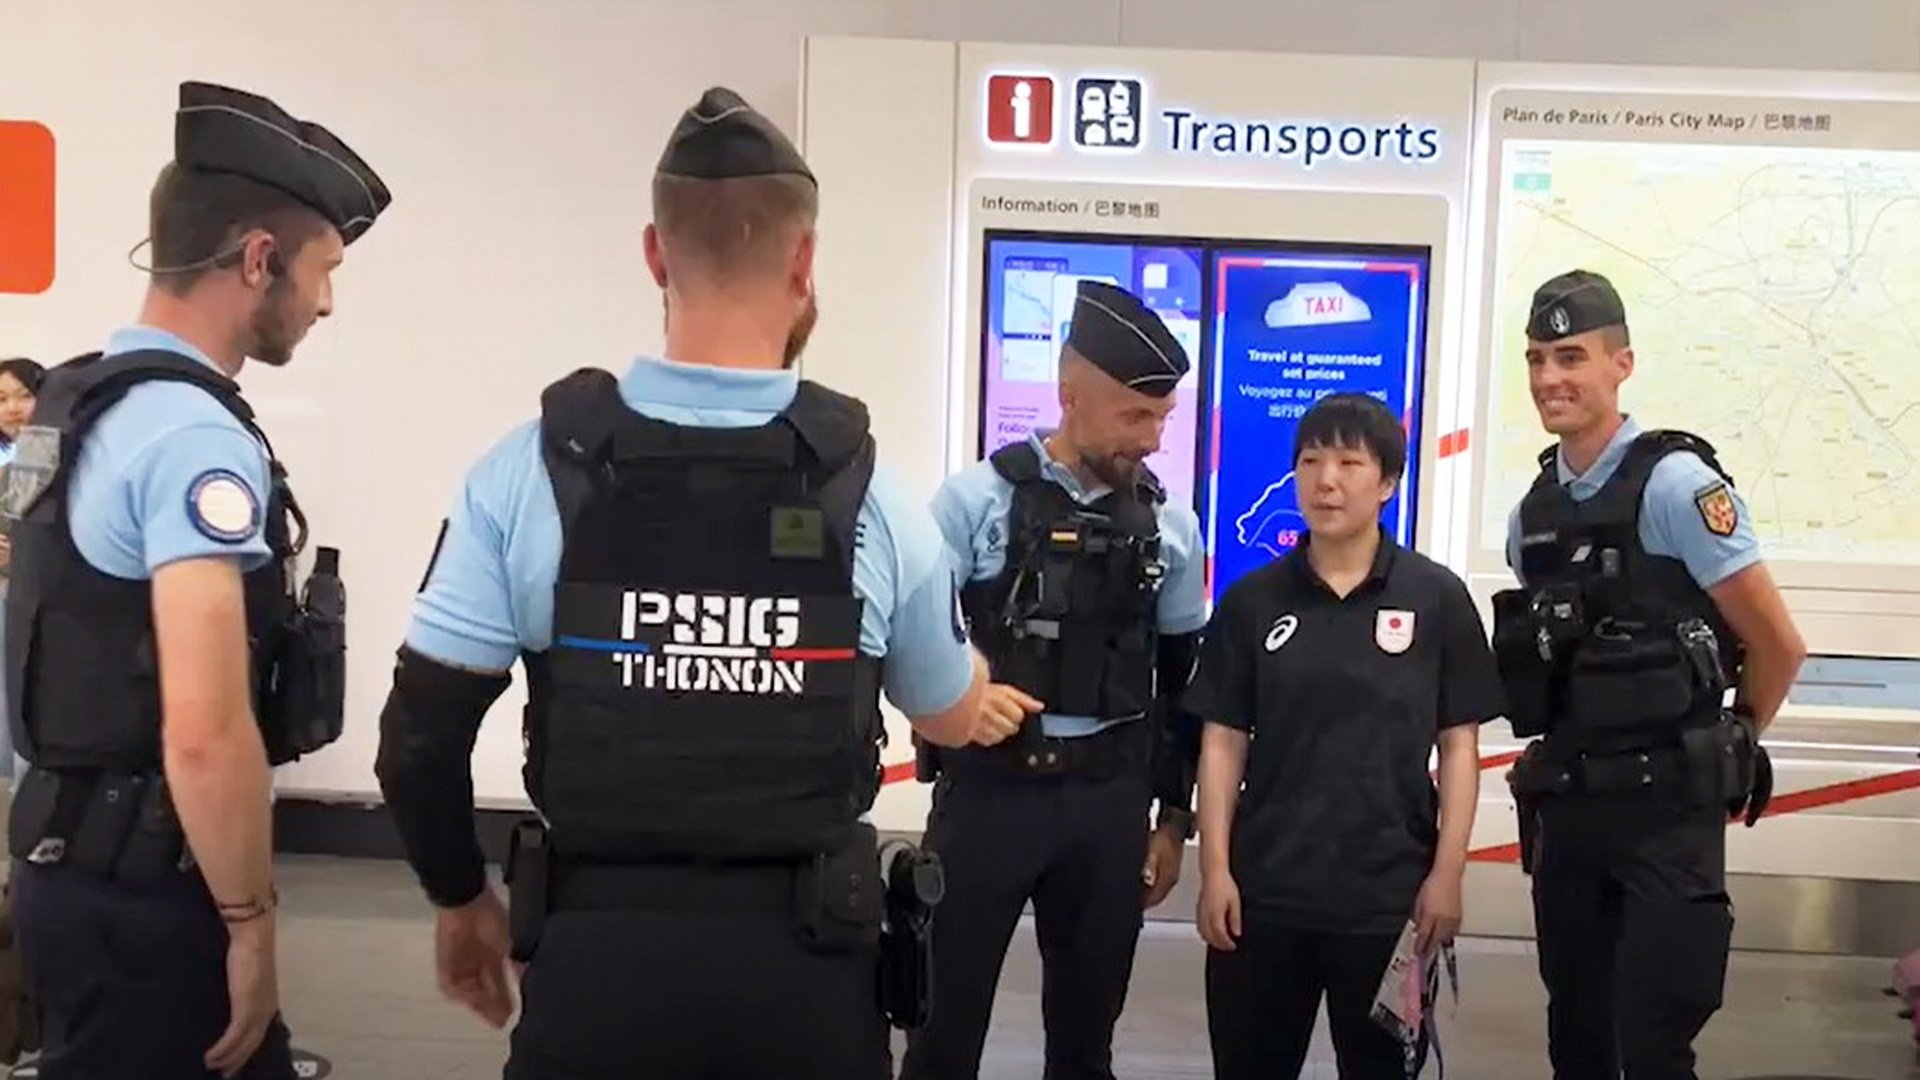 バドミントン日本代表 フランスに到着 空港警備員に囲まれた山口茜「いよいよだなって」【パリ五輪】